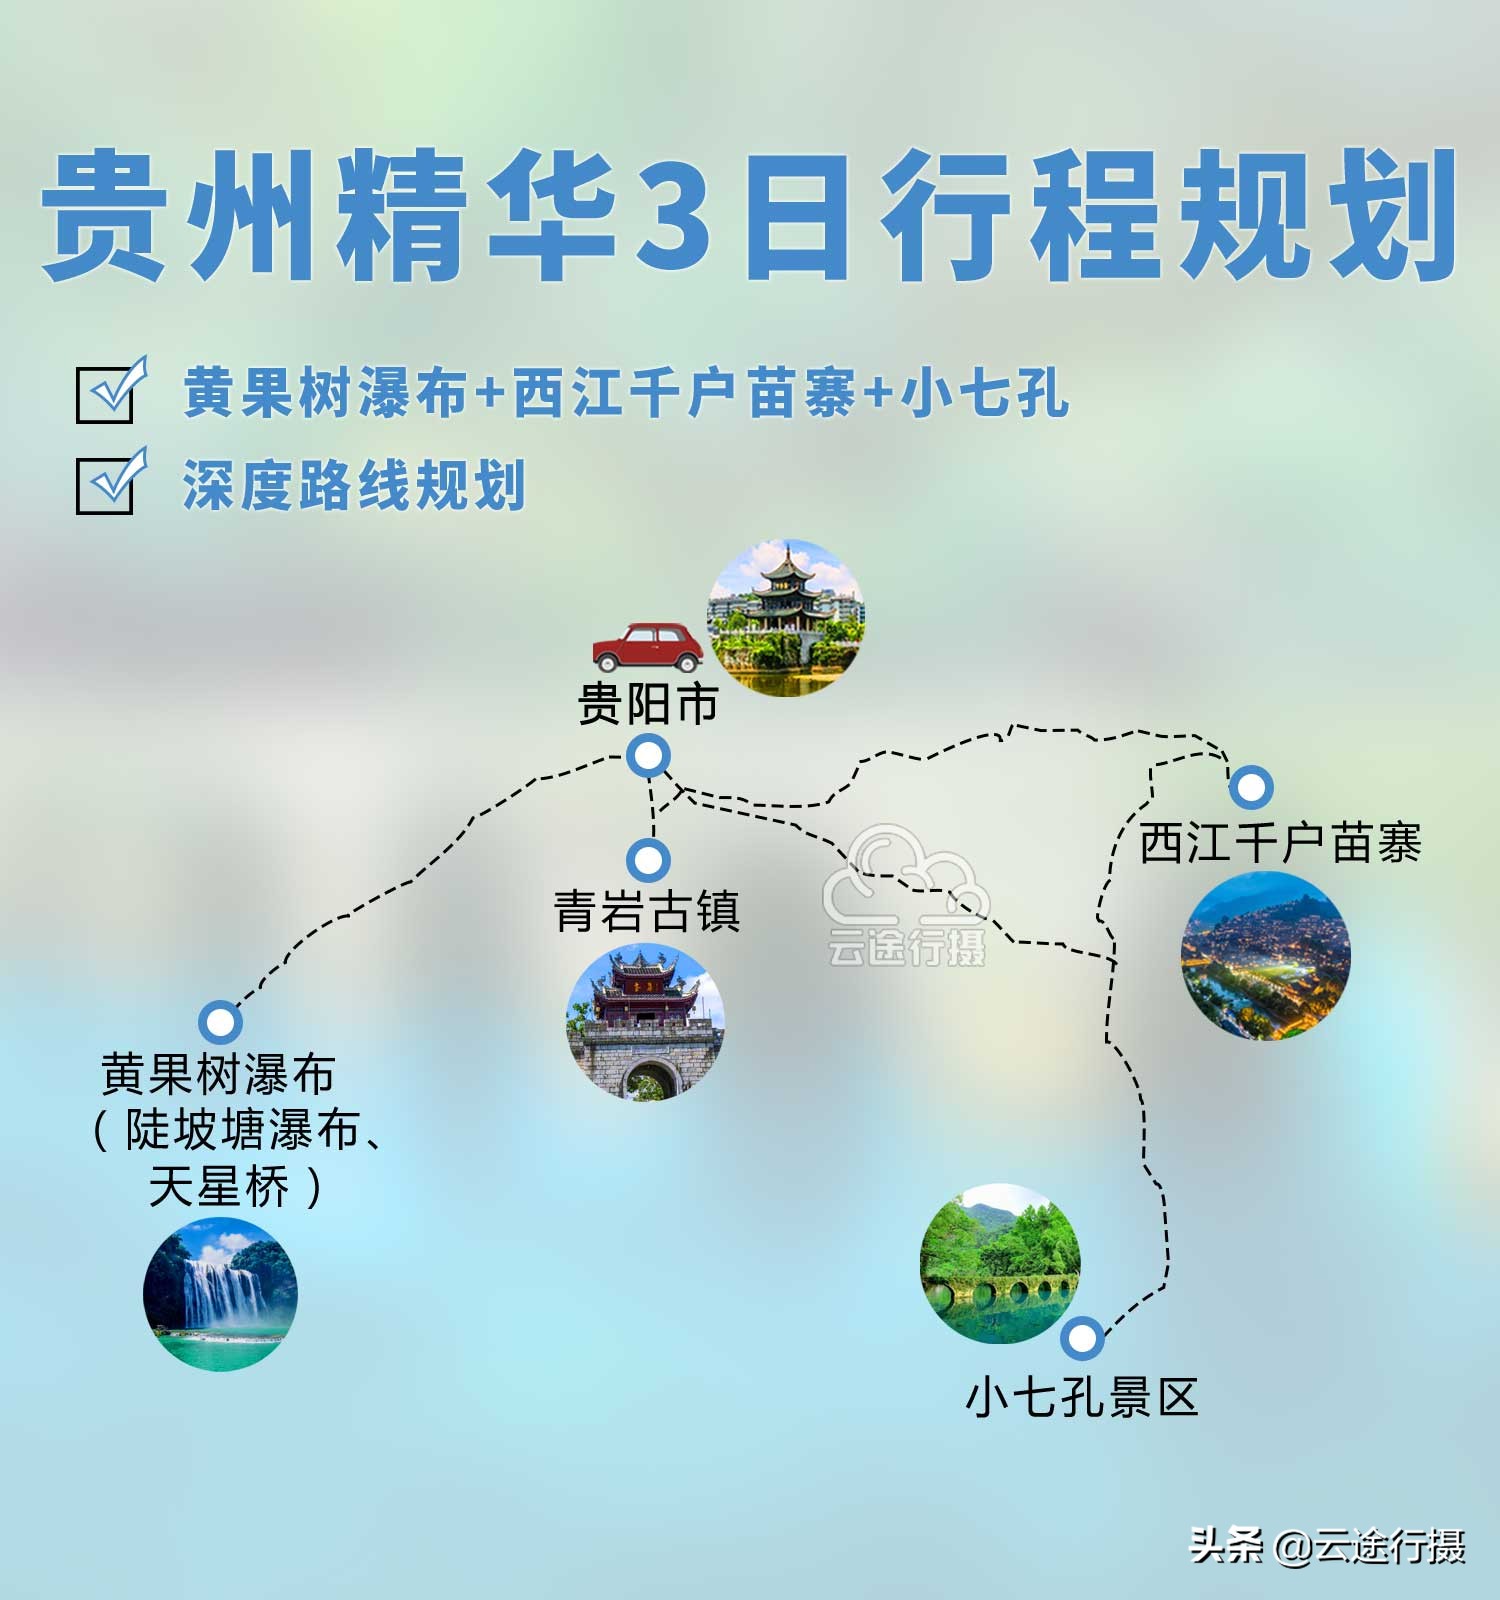 旅游去贵州玩5天的路线分享，贵州旅游攻略及其线路推荐，看完马上出发